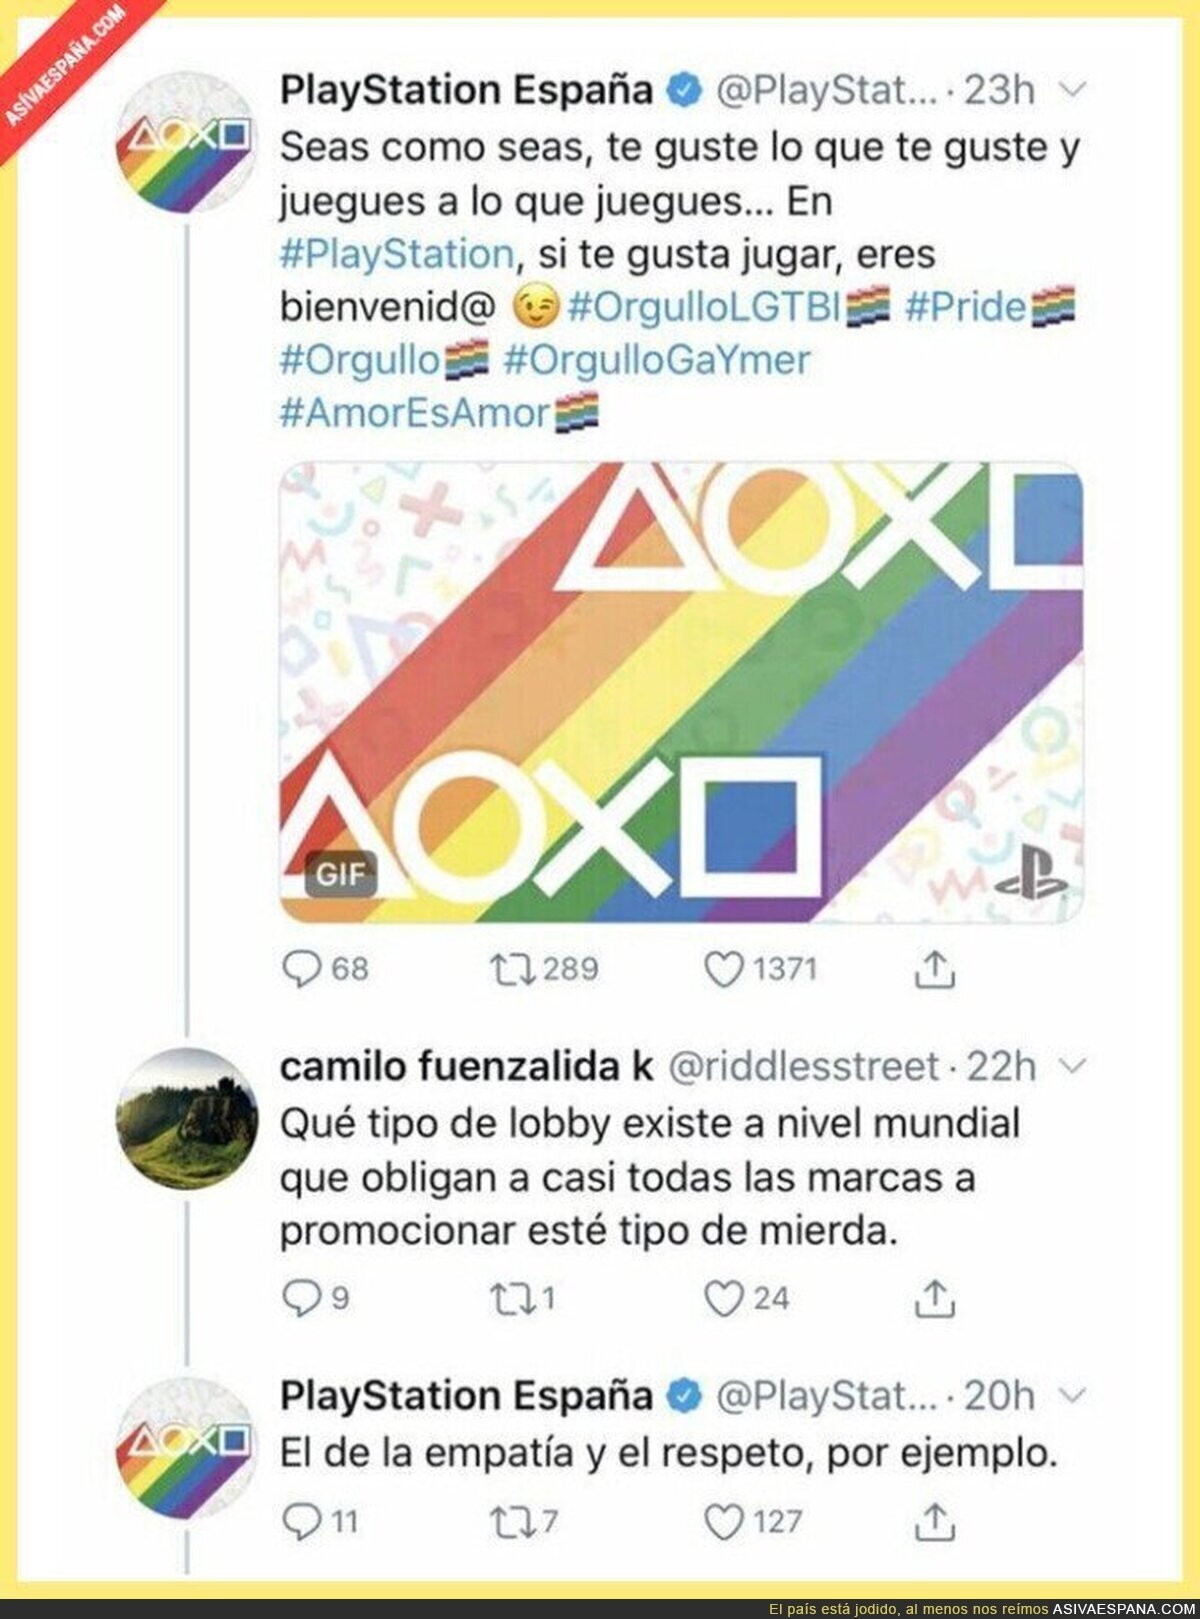 La gran respuesta de PlayStation España ante un intolerante del movimiento LGTB